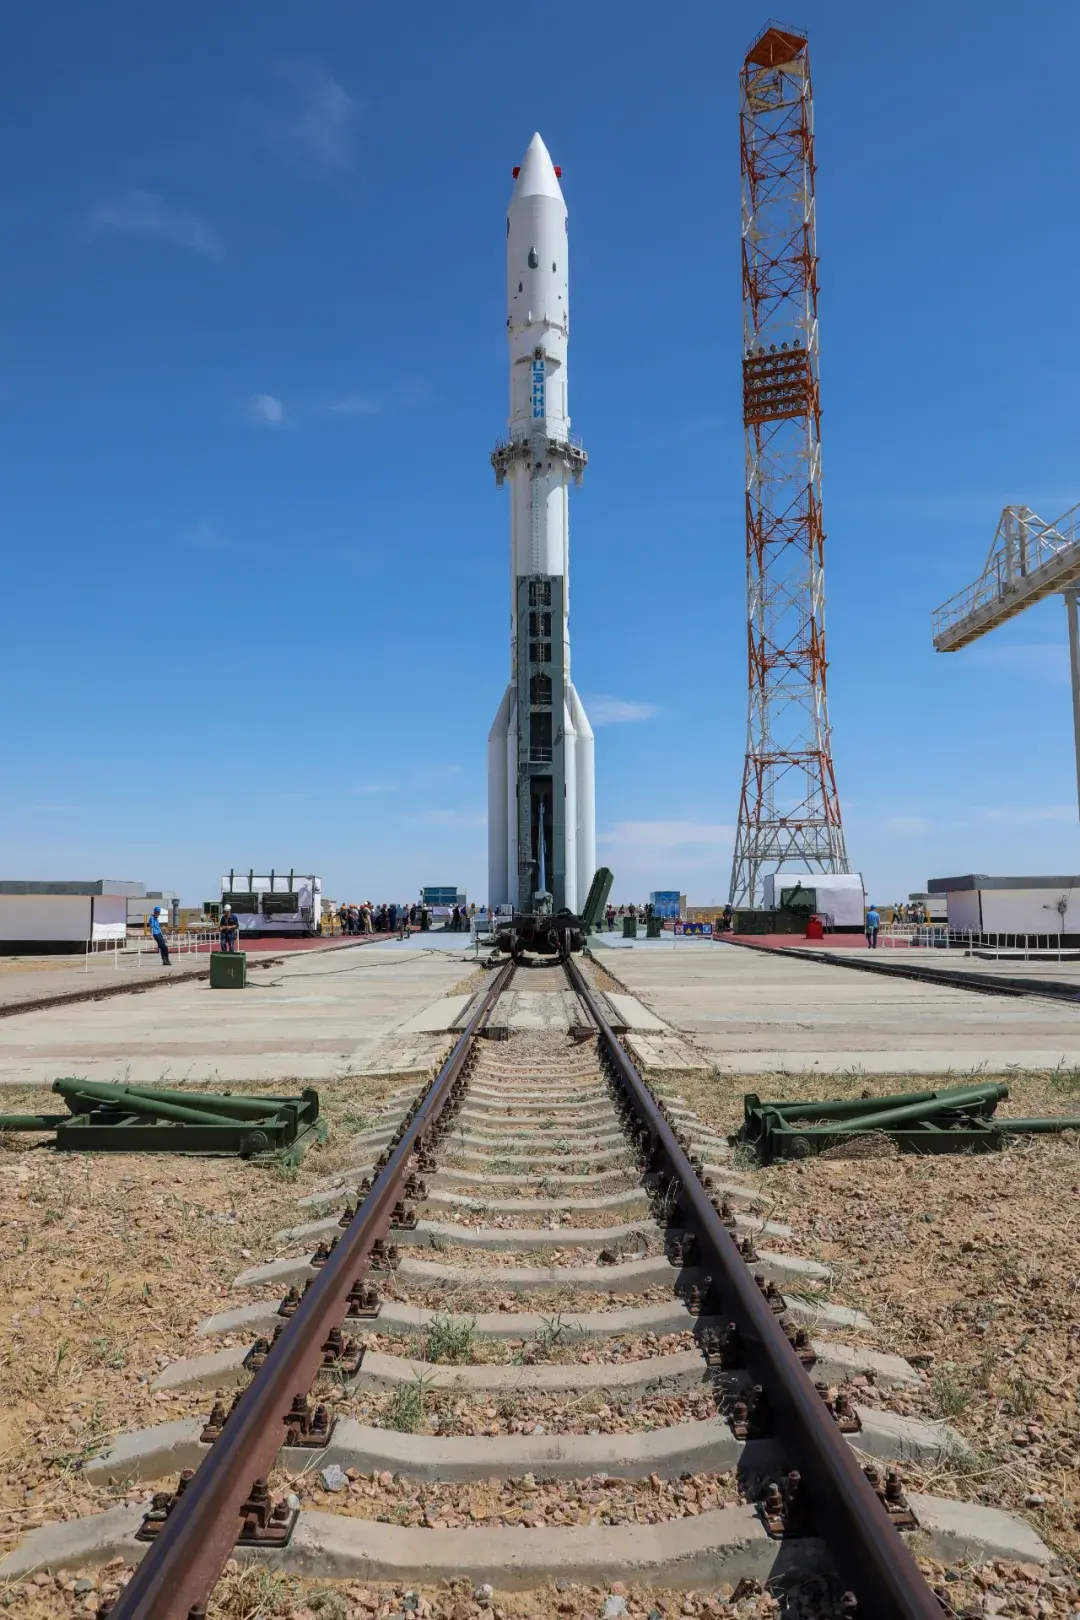 质子m火箭是三级火箭,leo轨道运载能力为216吨